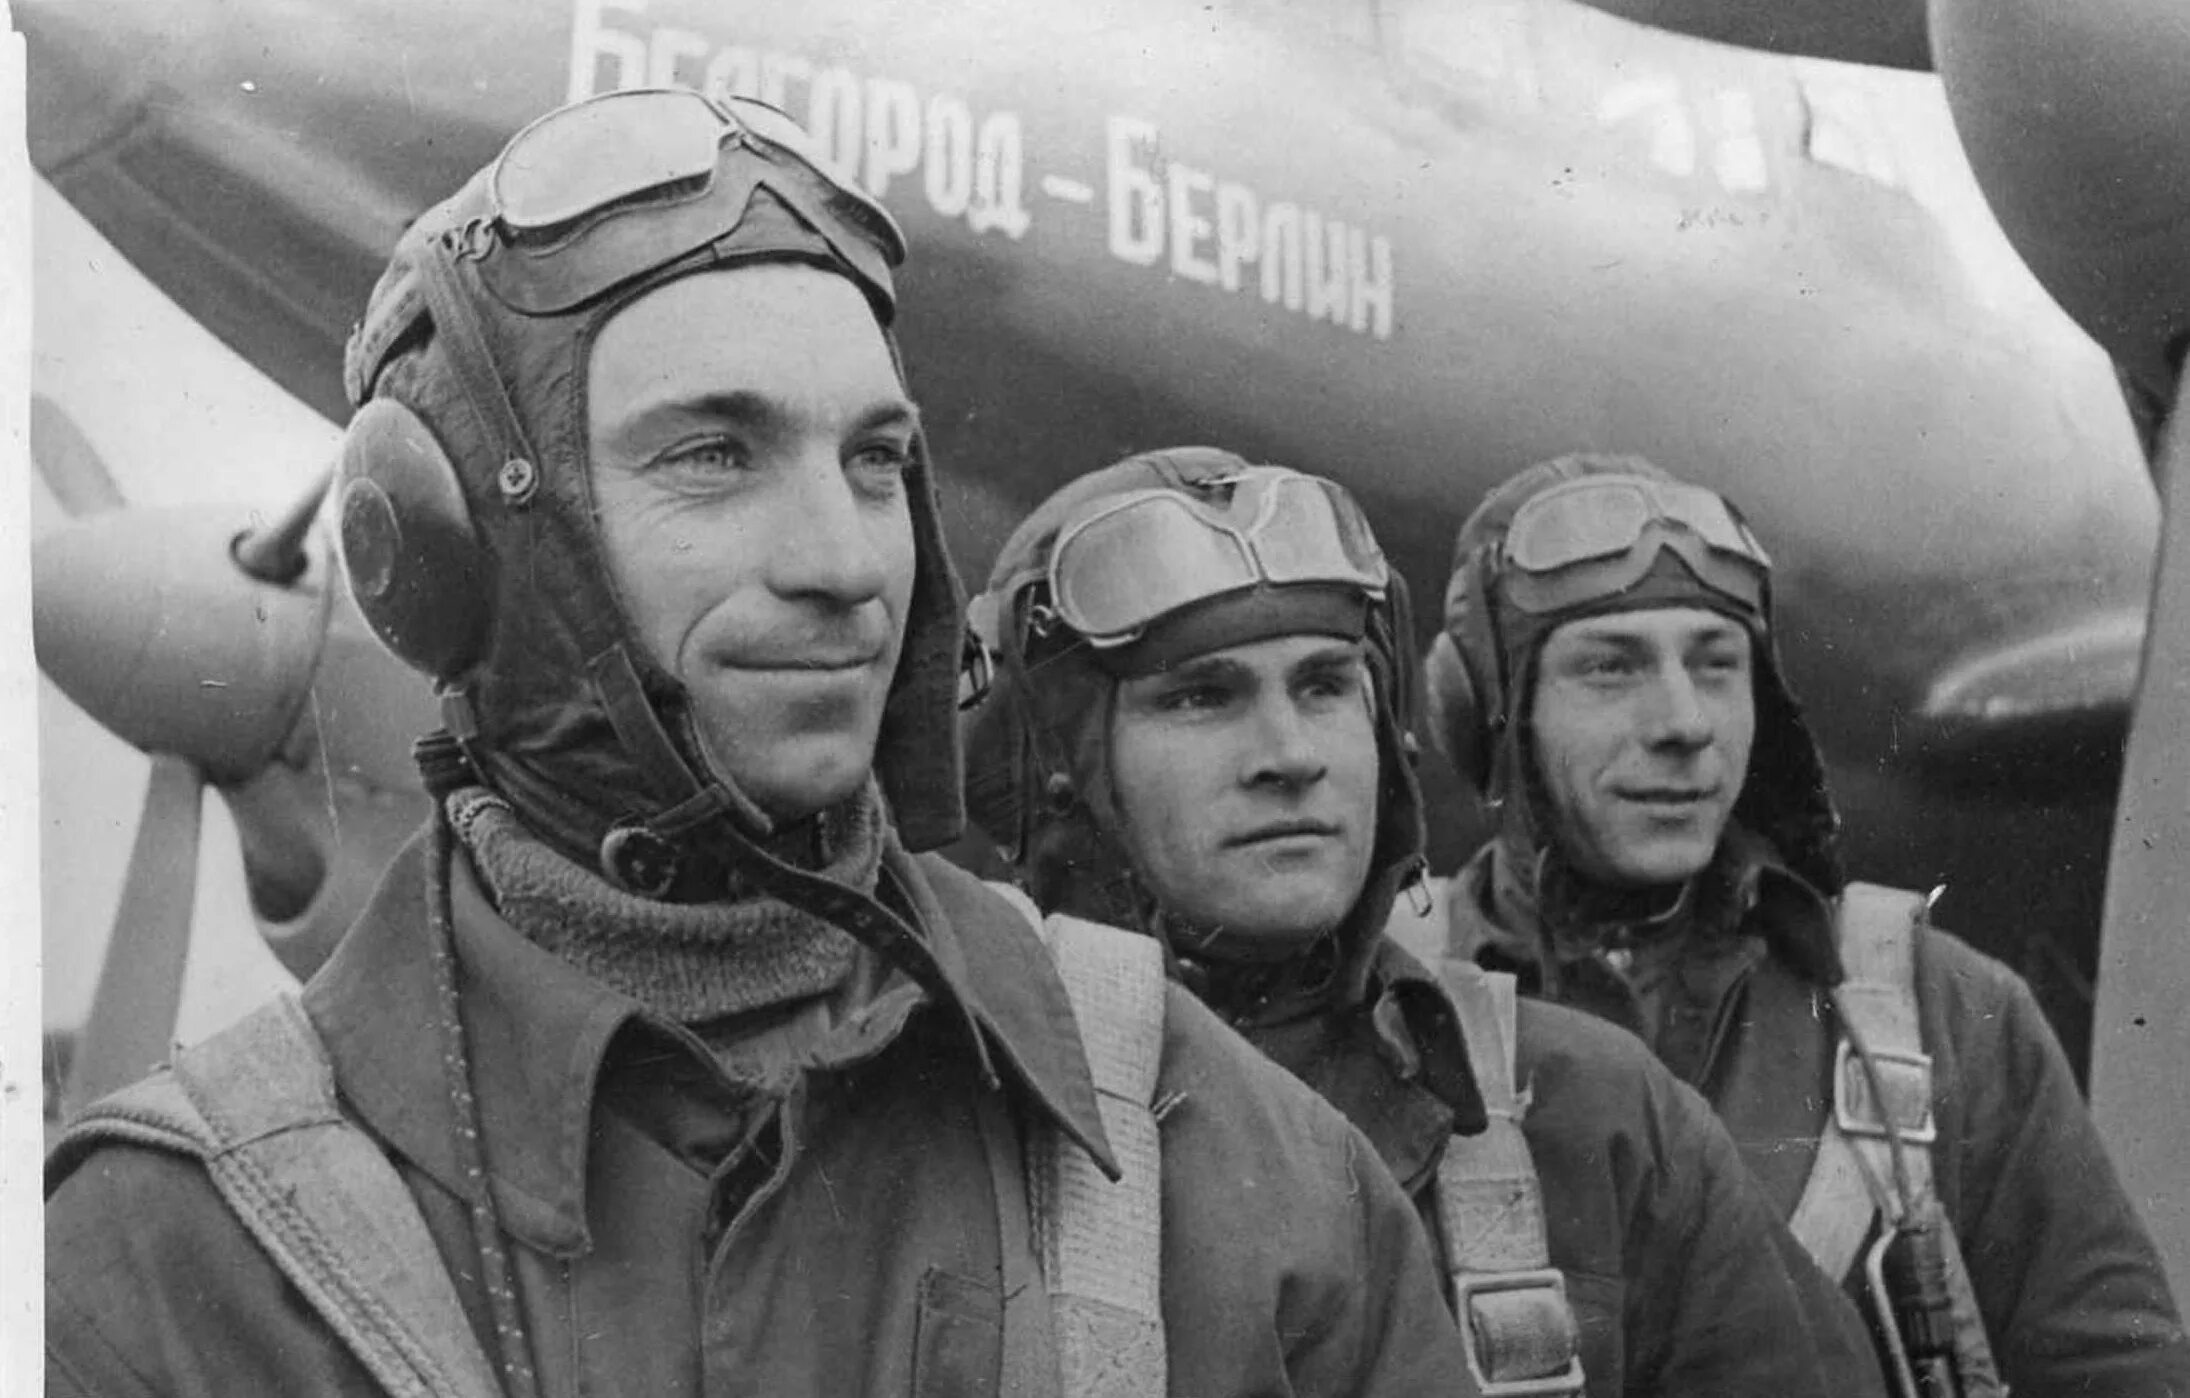 Летчик бомбардировщик герой советского союза. Пе 2 стрелок радист. В.Д. Лавриненков, военный лётчик-истребитель.